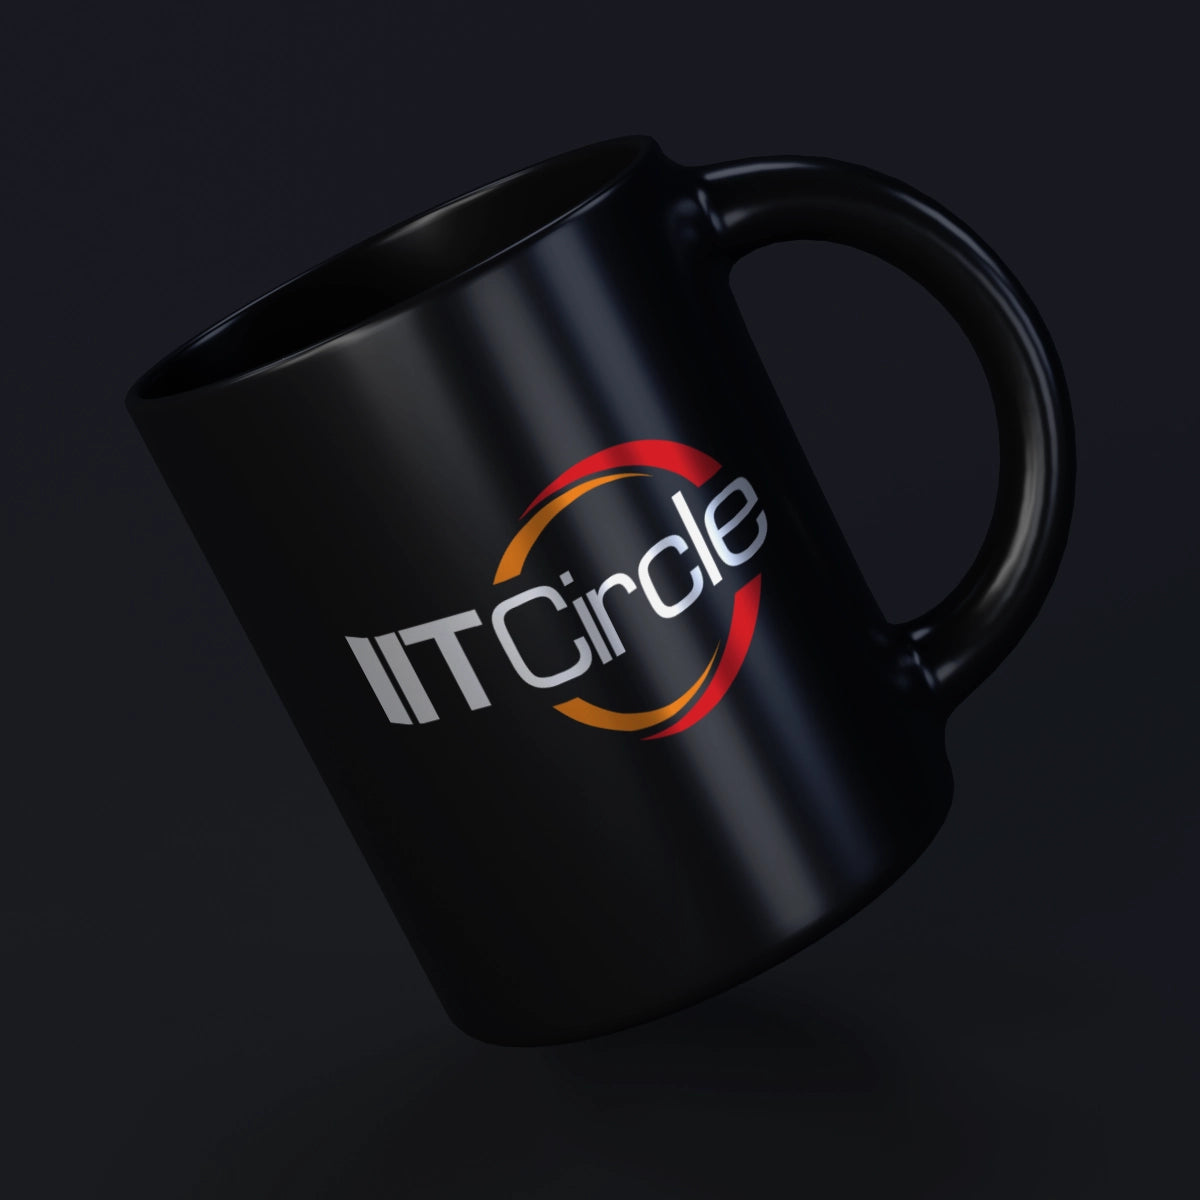 iitcircle.com